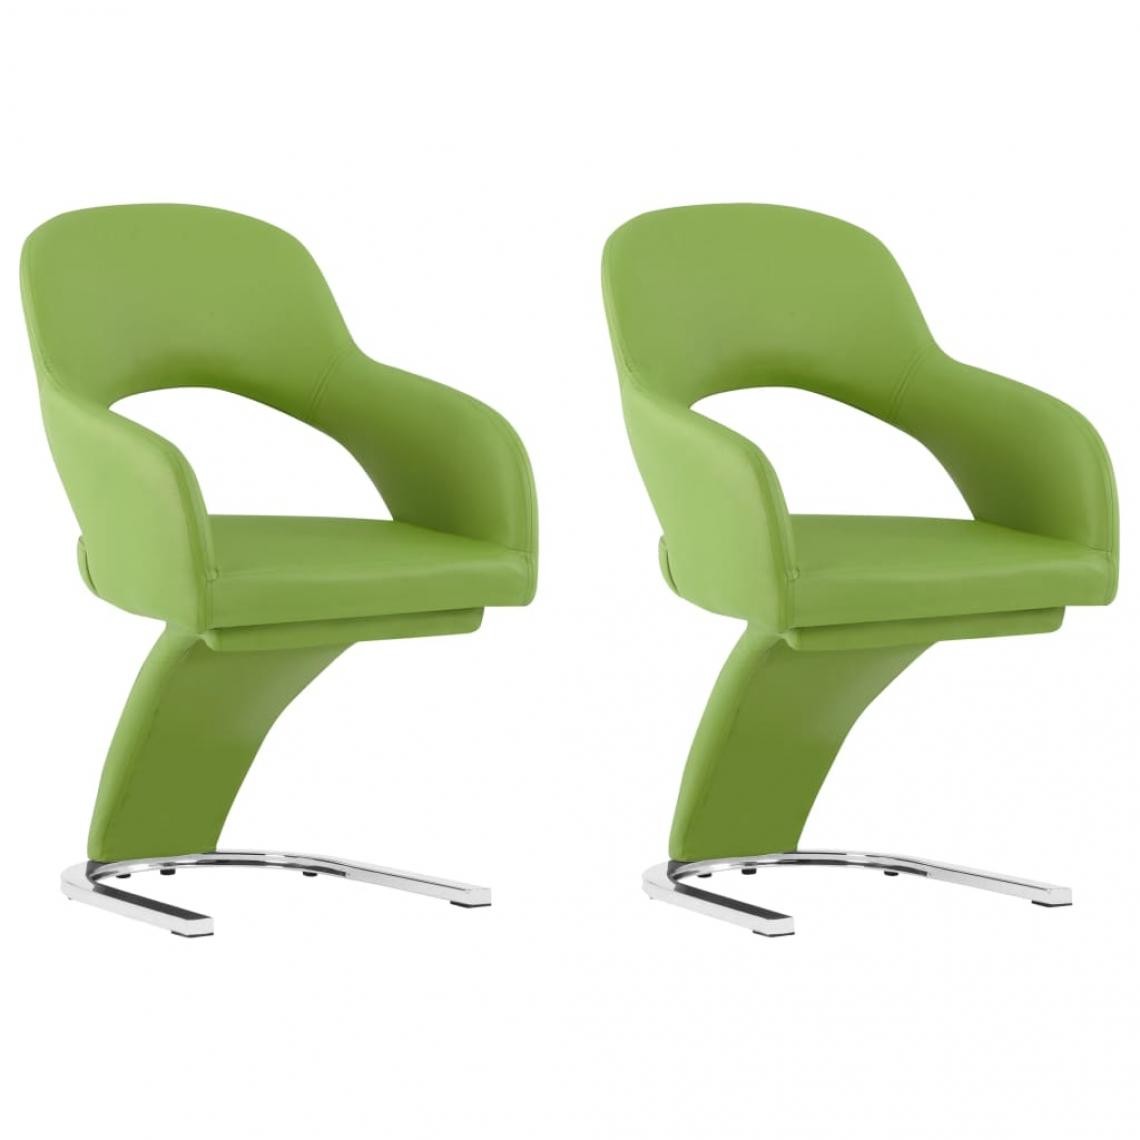 Decoshop26 - Lot de 2 chaises de salle à manger cuisine design moderne similicuir vert CDS021097 - Chaises